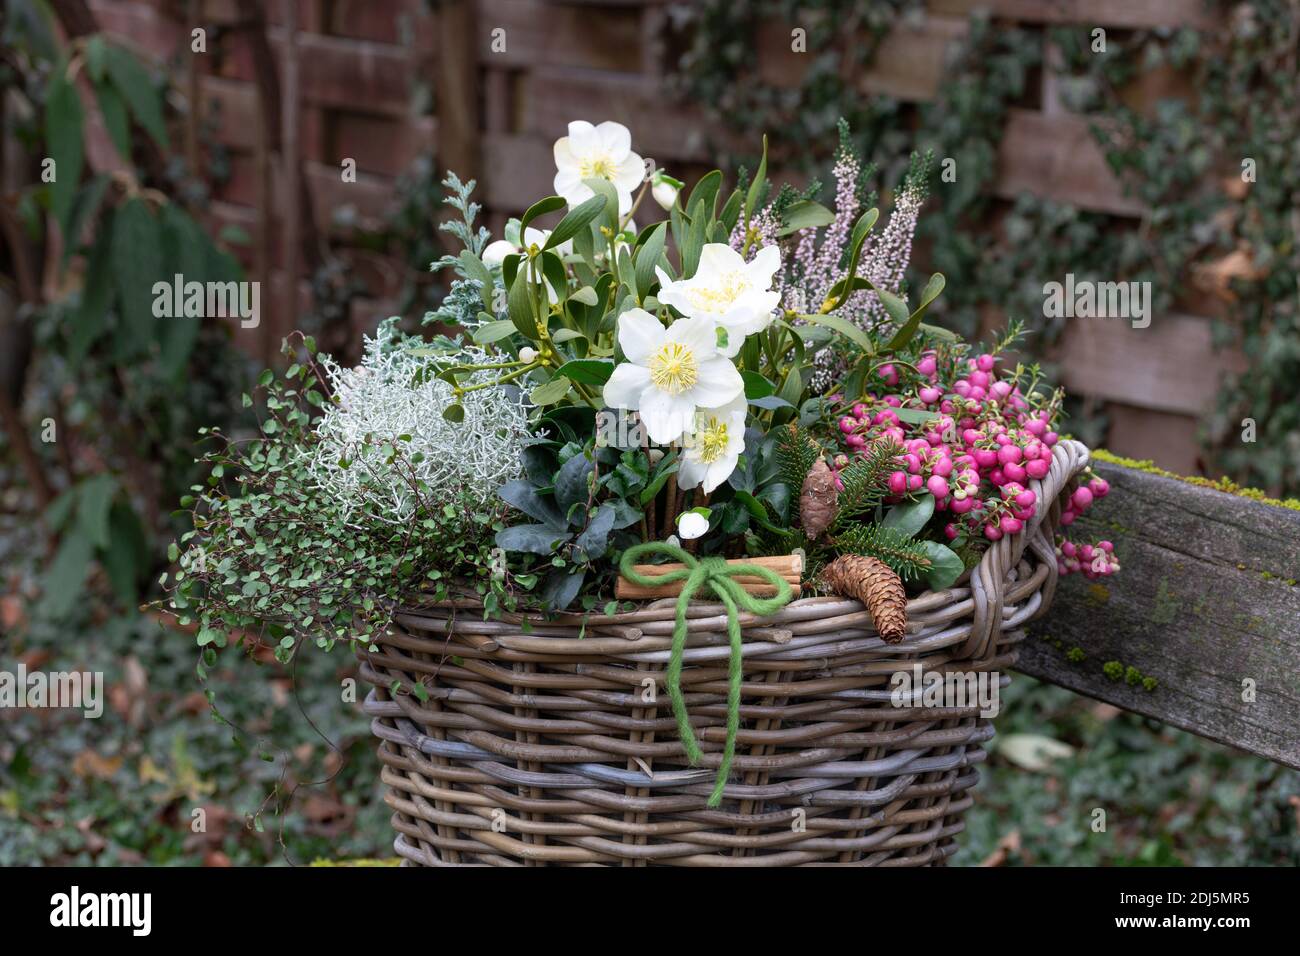 basket with helleborus niger, prickly heath, heather flower, mistletoe and cushion bush in winter garden Stock Photo